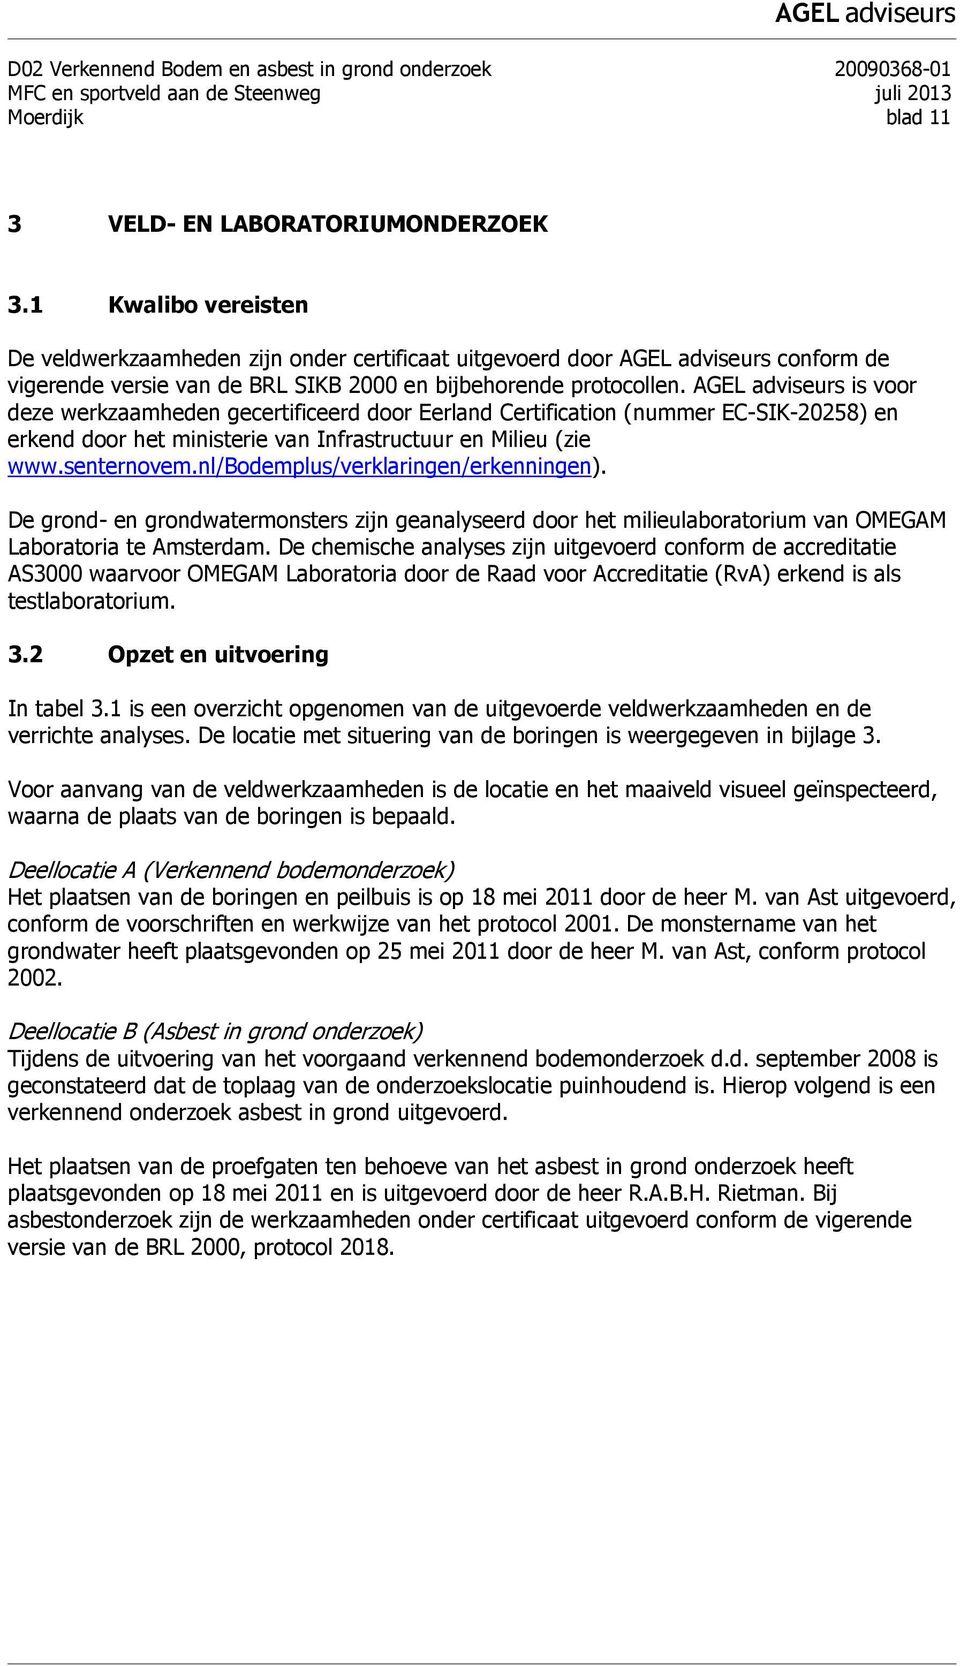 AGEL adviseurs is voor deze werkzaamheden gecertificeerd door Eerland Certification (nummer EC-SIK-20258) en erkend door het ministerie van Infrastructuur en Milieu (zie www.senternovem.